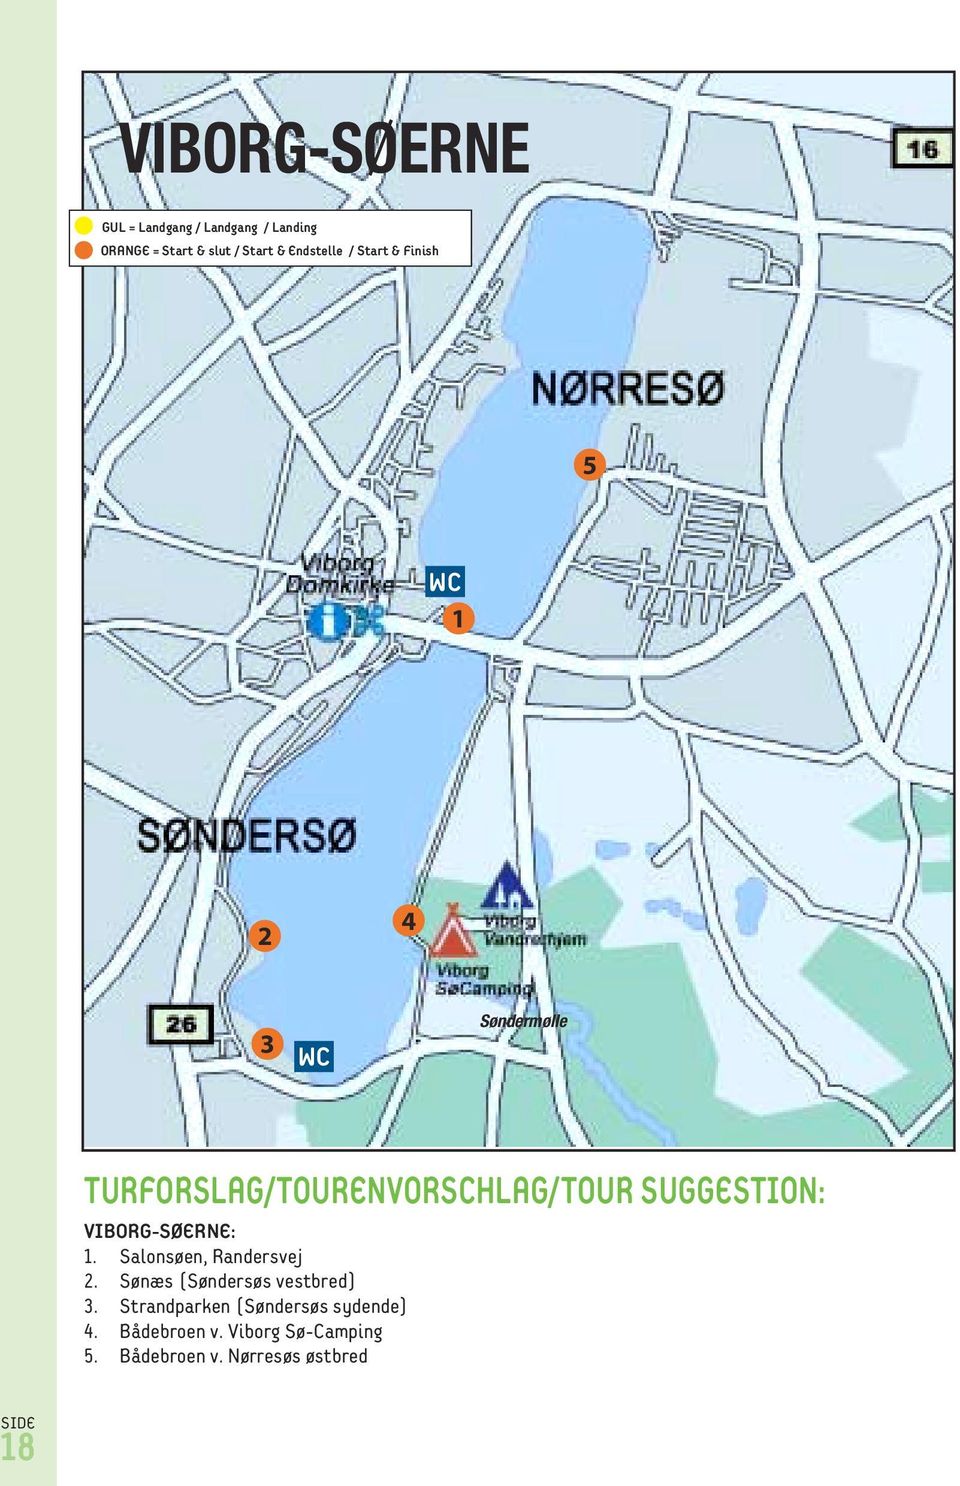 SUGGESTION: VIBORG-SØERNE: 1. Salonsøen, Randersvej 2. Sønæs (Søndersøs vestbred) 3.